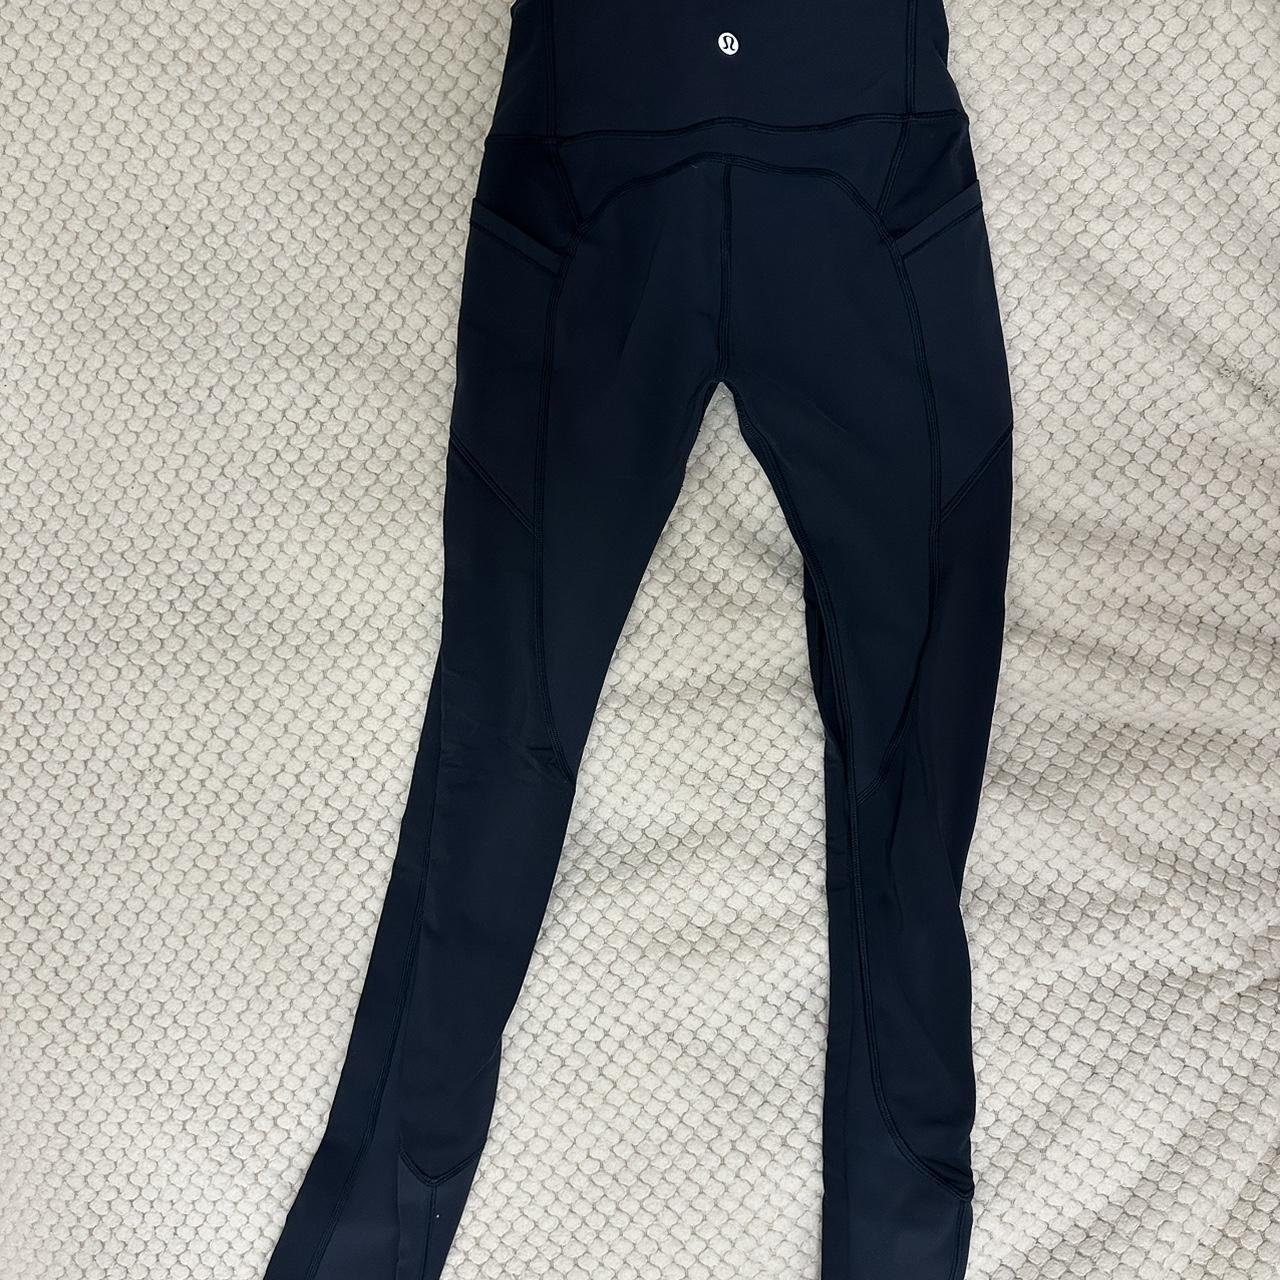 leggings with pockets. dark teal color - Depop